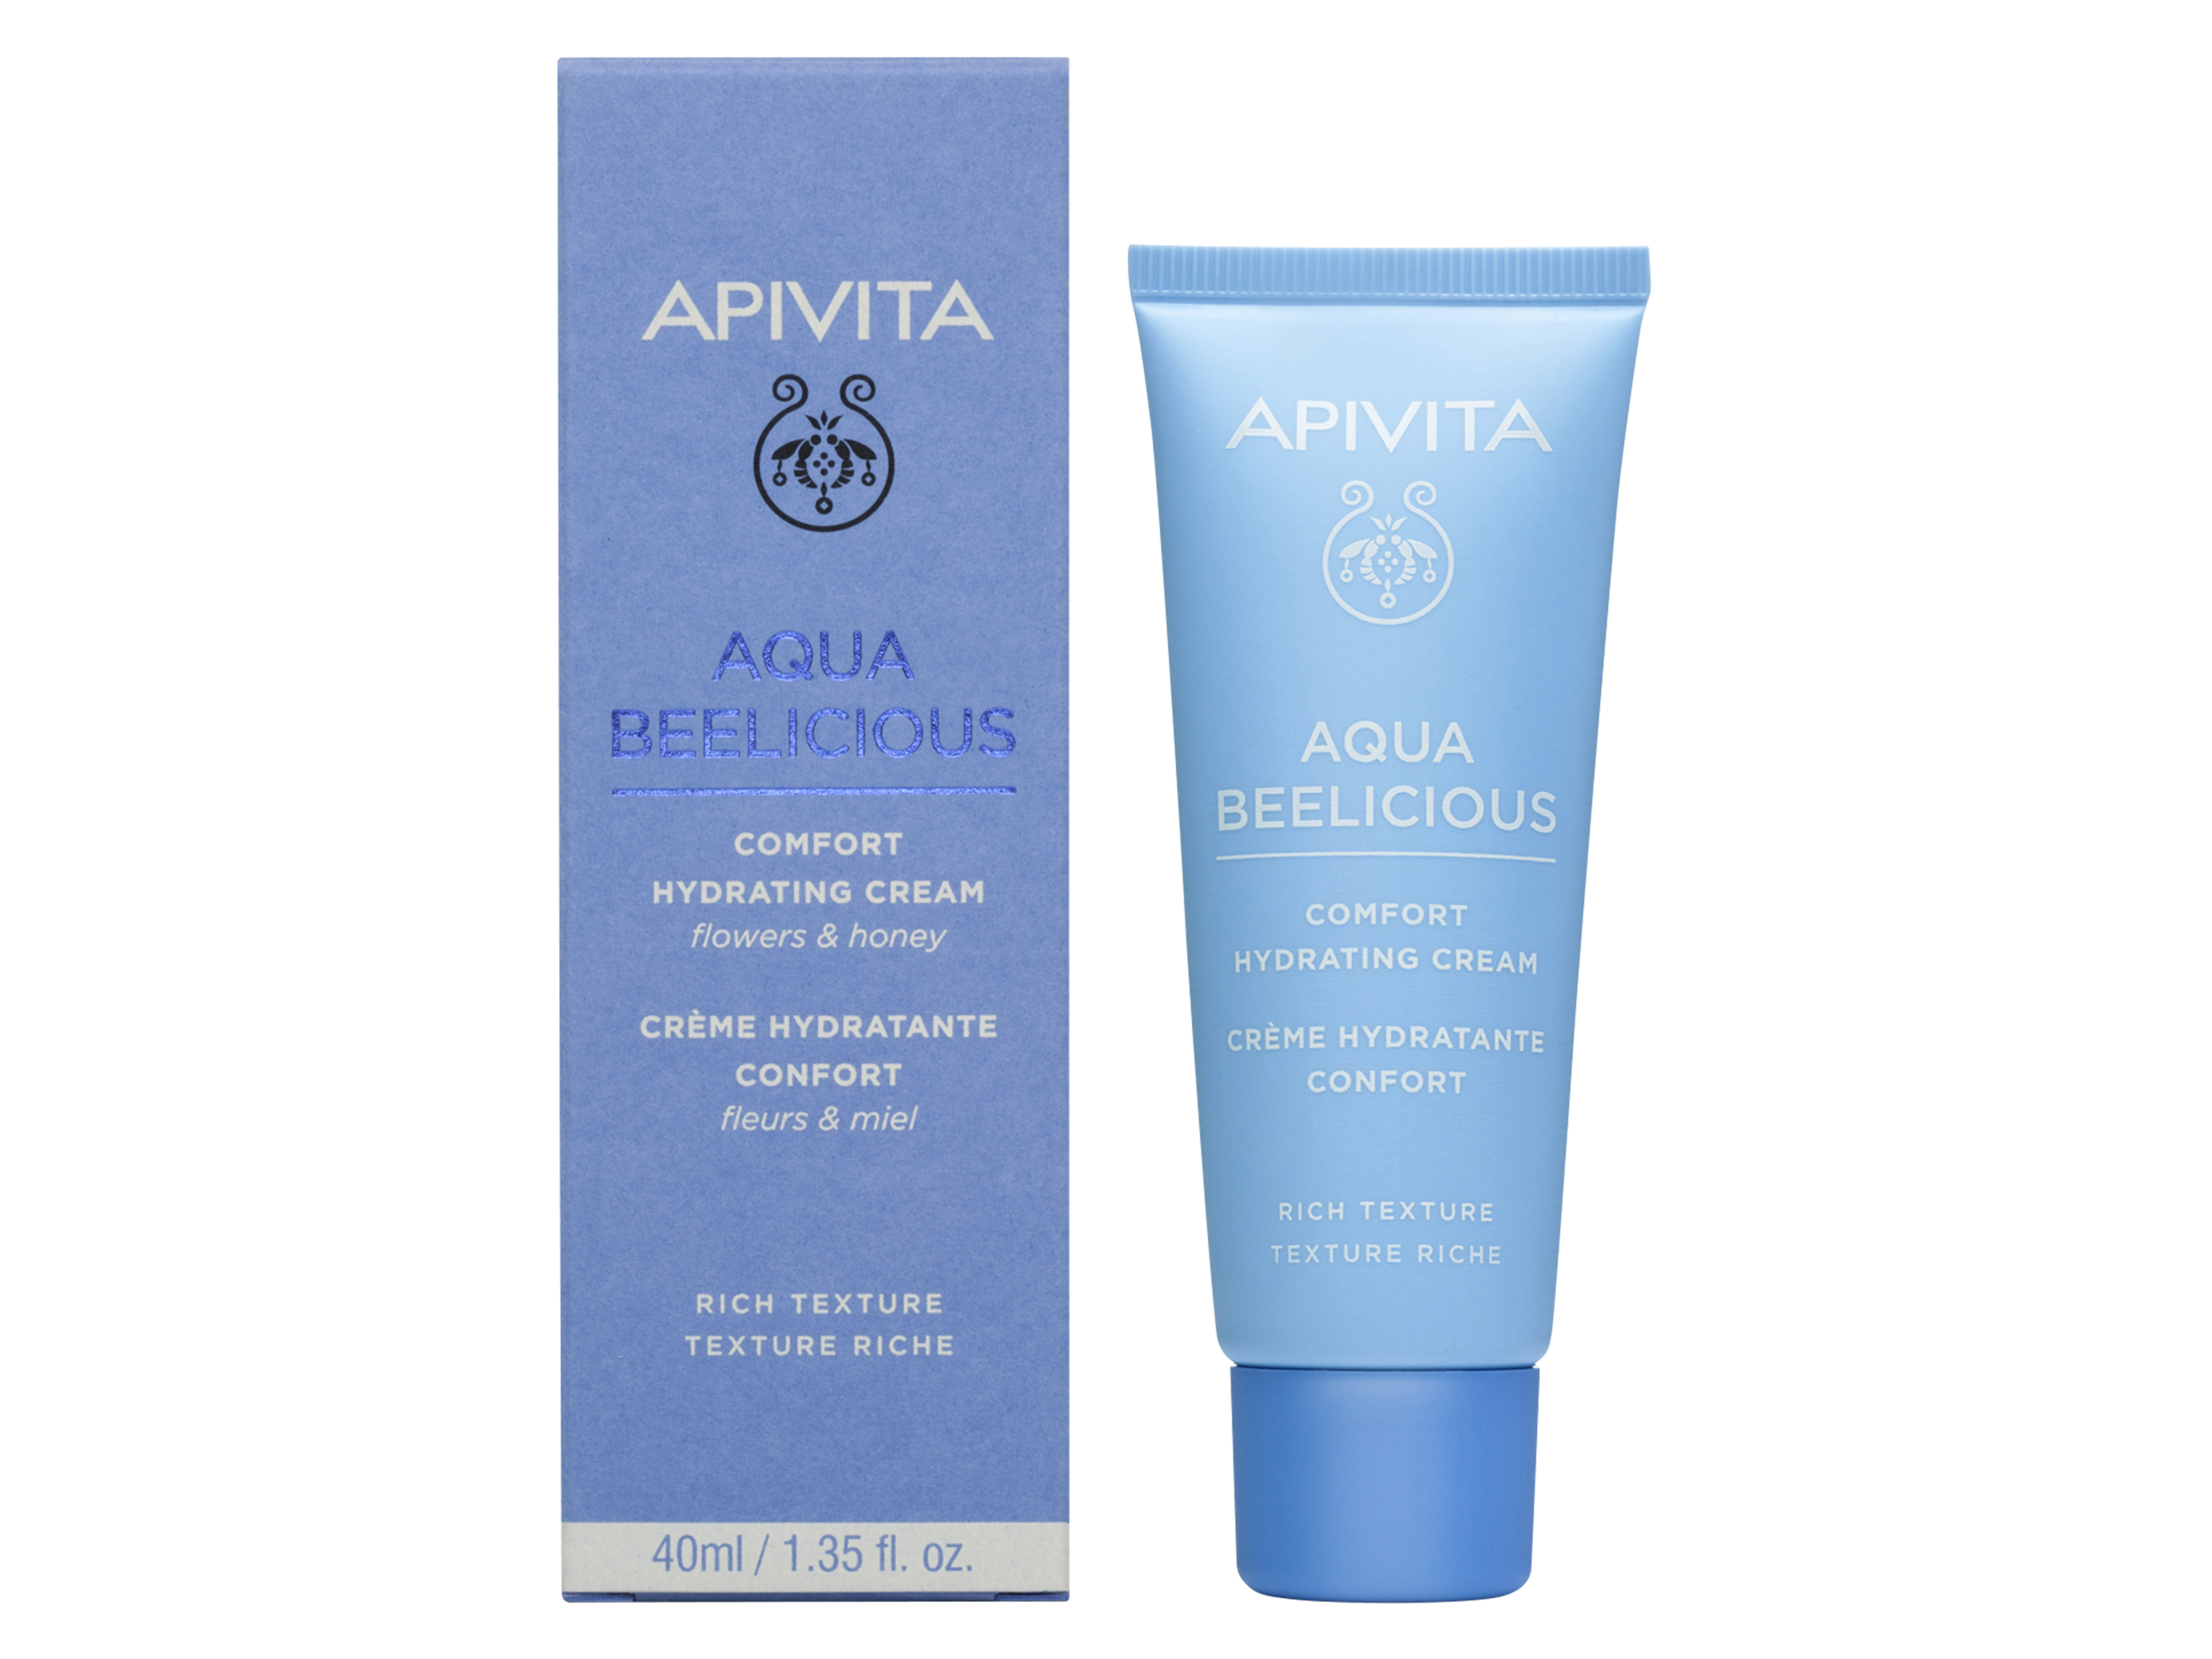 Apivita Aqua Beelicious Comfort Hydrating Cream, 40 ml